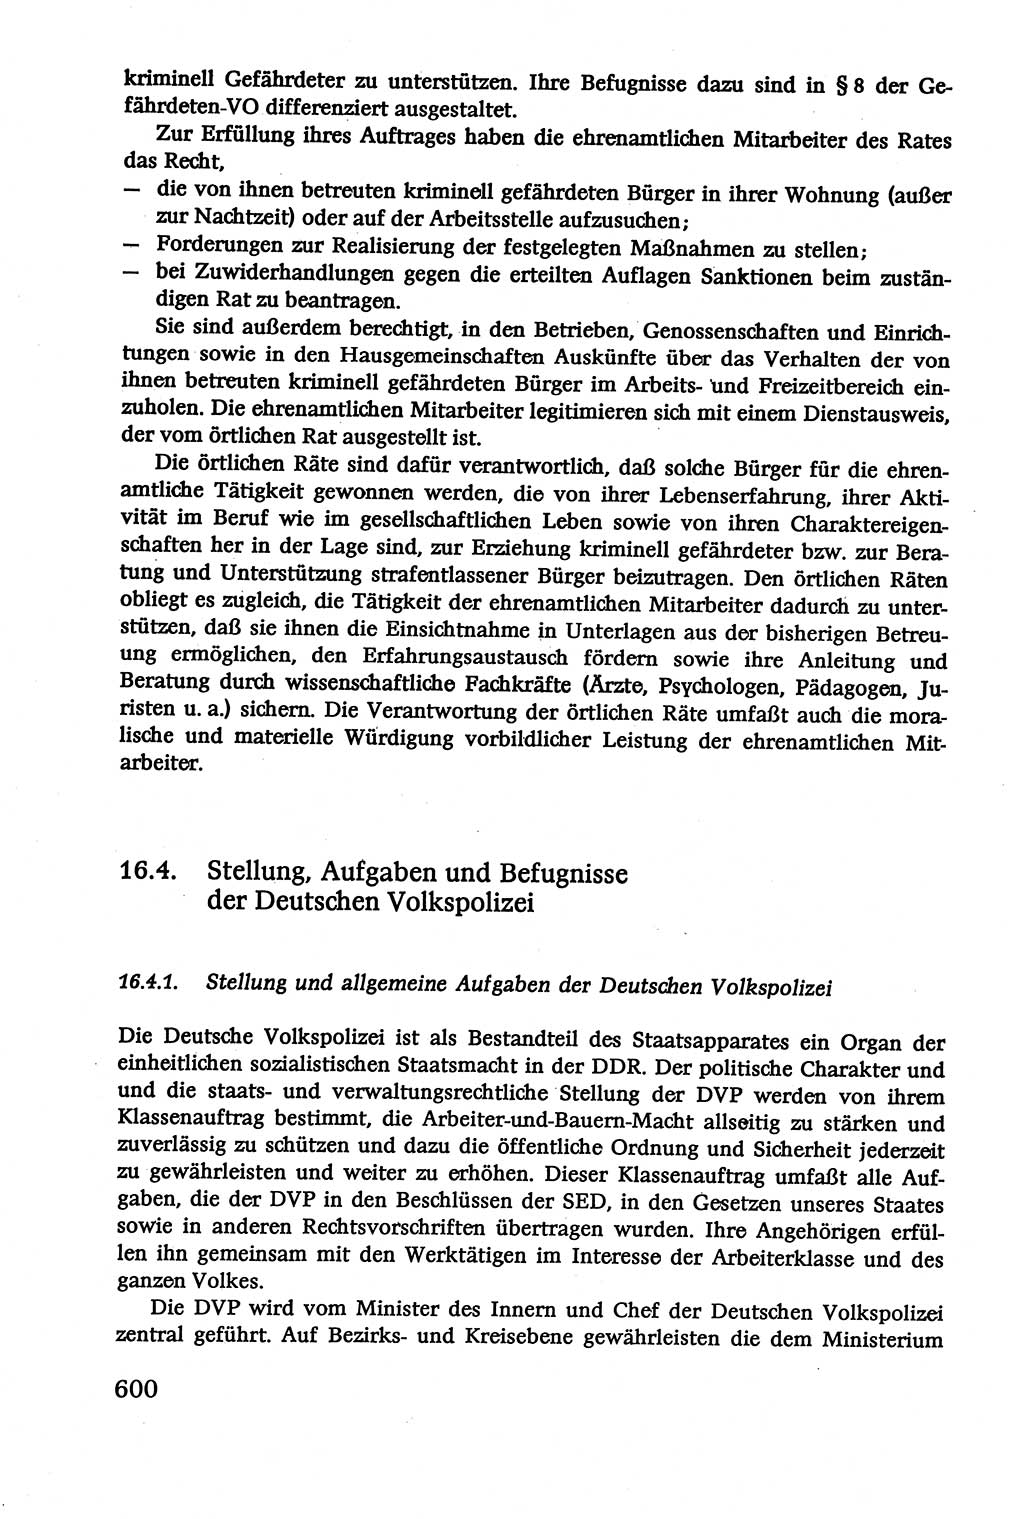 Verwaltungsrecht [Deutsche Demokratische Republik (DDR)], Lehrbuch 1979, Seite 600 (Verw.-R. DDR Lb. 1979, S. 600)